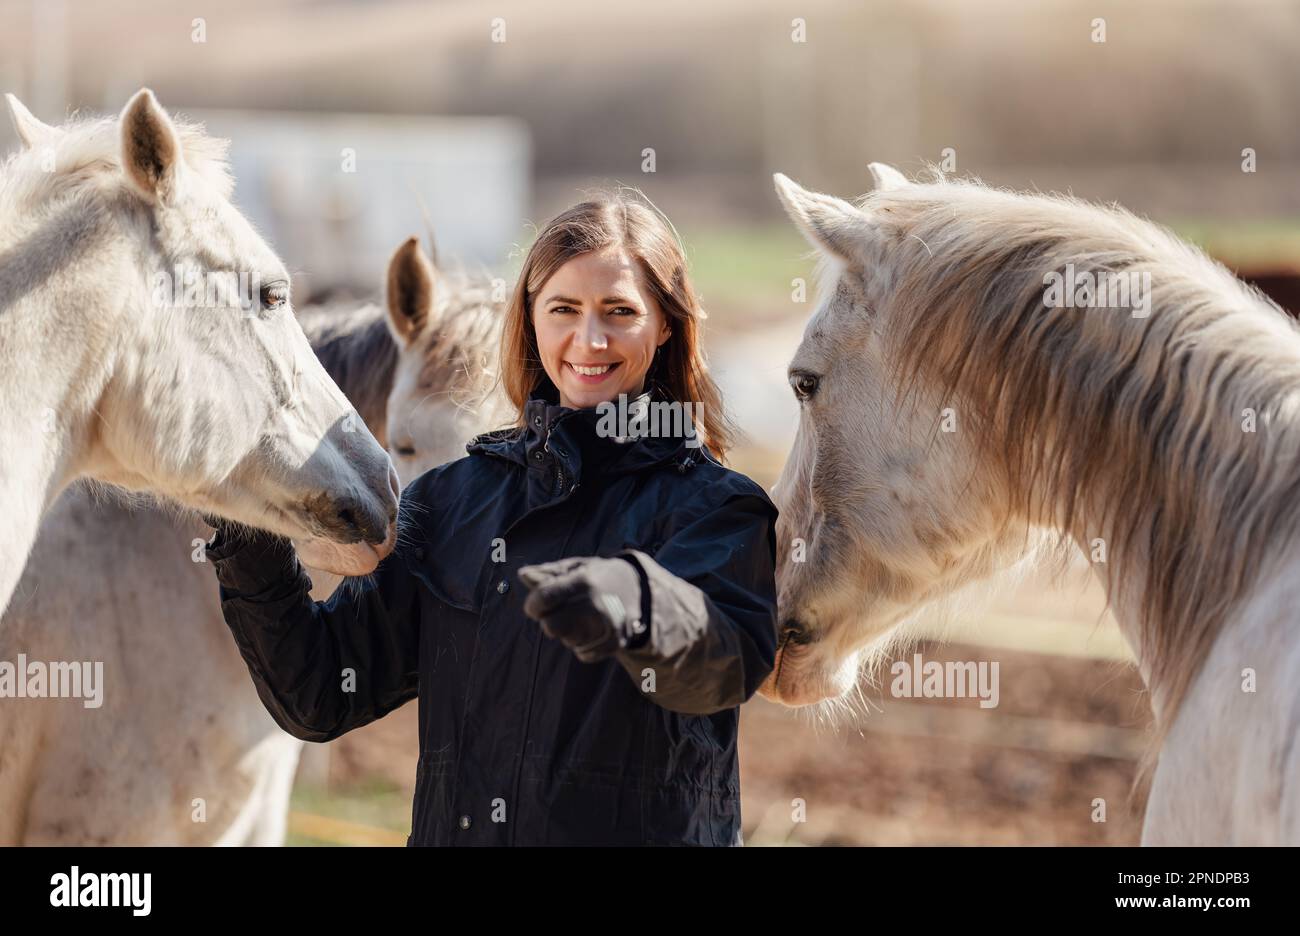 Jeune femme en blouson d'équitation noir debout près d'un groupe de chevaux blancs arabes souriant heureux, un de chaque côté, détail gros plan Banque D'Images